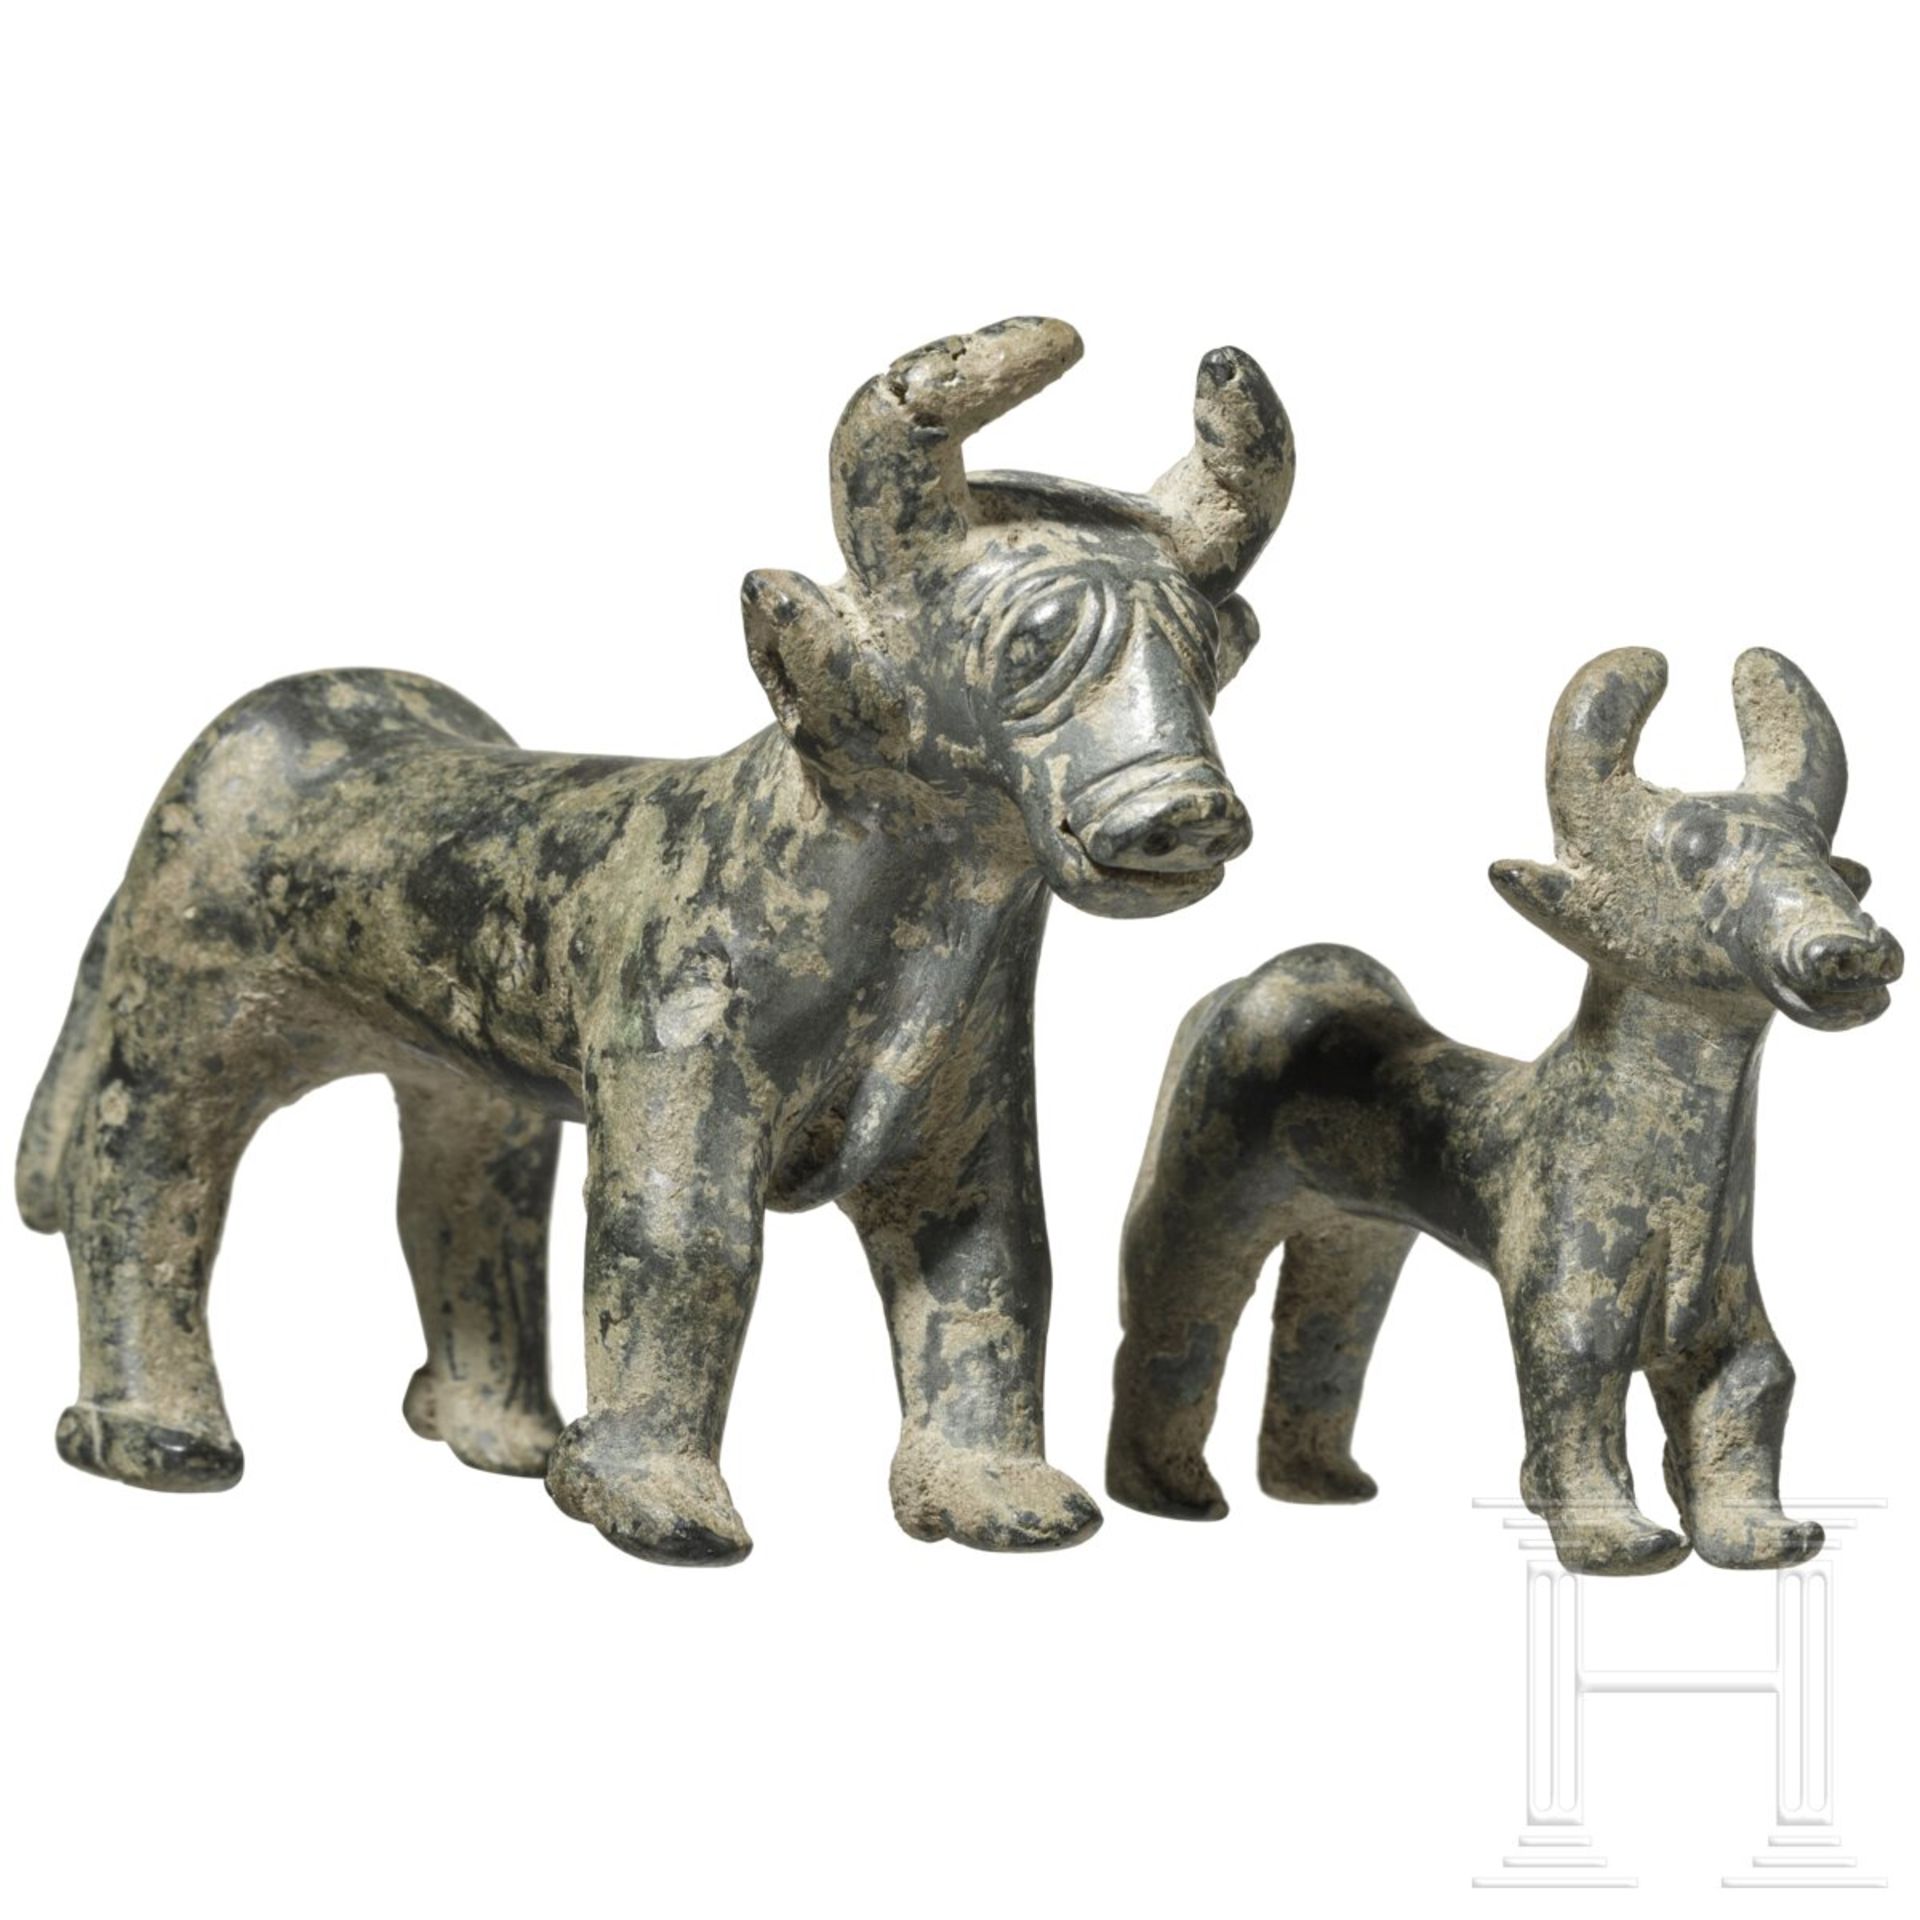 Ein Paar Bronze-Stiere, Kaluraz, Gilan, Nord-Iran, 3. Jtsd. v. Chr.  - Bild 2 aus 6